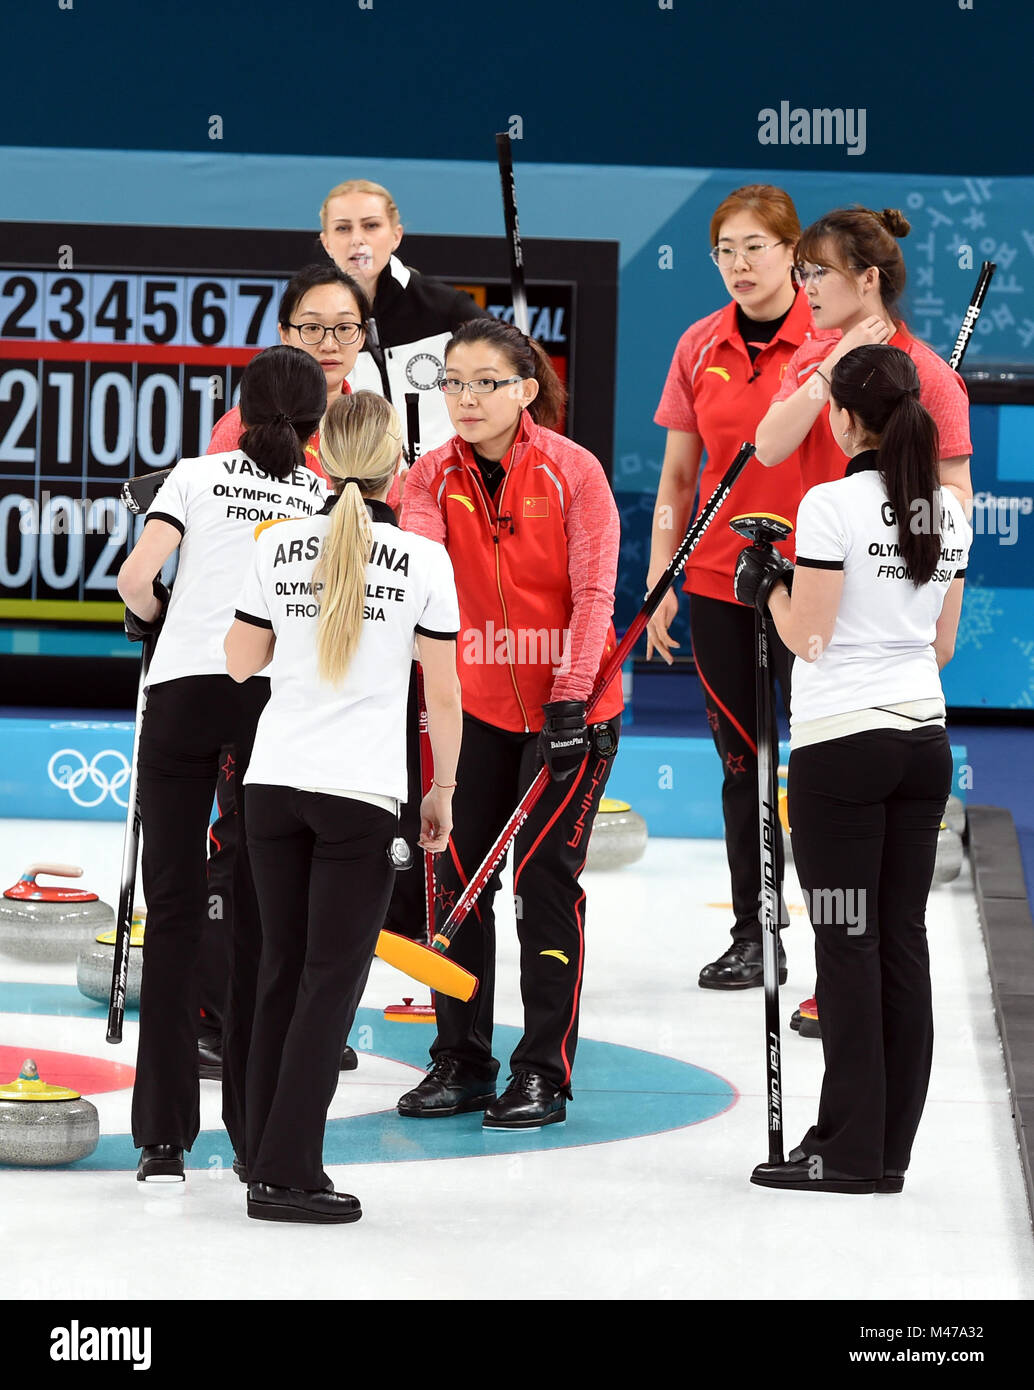 Pyeongchang, Corée du Sud. Feb 15, 2018. Les athlètes olympiques de la Russie (en blanc) se serrer la main avec les athlètes chinois après avoir remporté le tournoi à la ronde des femmes de l'événement contre la Chine au curling aux Jeux Olympiques d'hiver de PyeongChang 2018 au Centre de curling Gangneung, Gangneung, Corée du Sud, le 15 février 2018. Les athlètes olympiques de la Russie a gagné 7-6. Credit : Ma Ping/Xinhua/Alamy Live News Banque D'Images